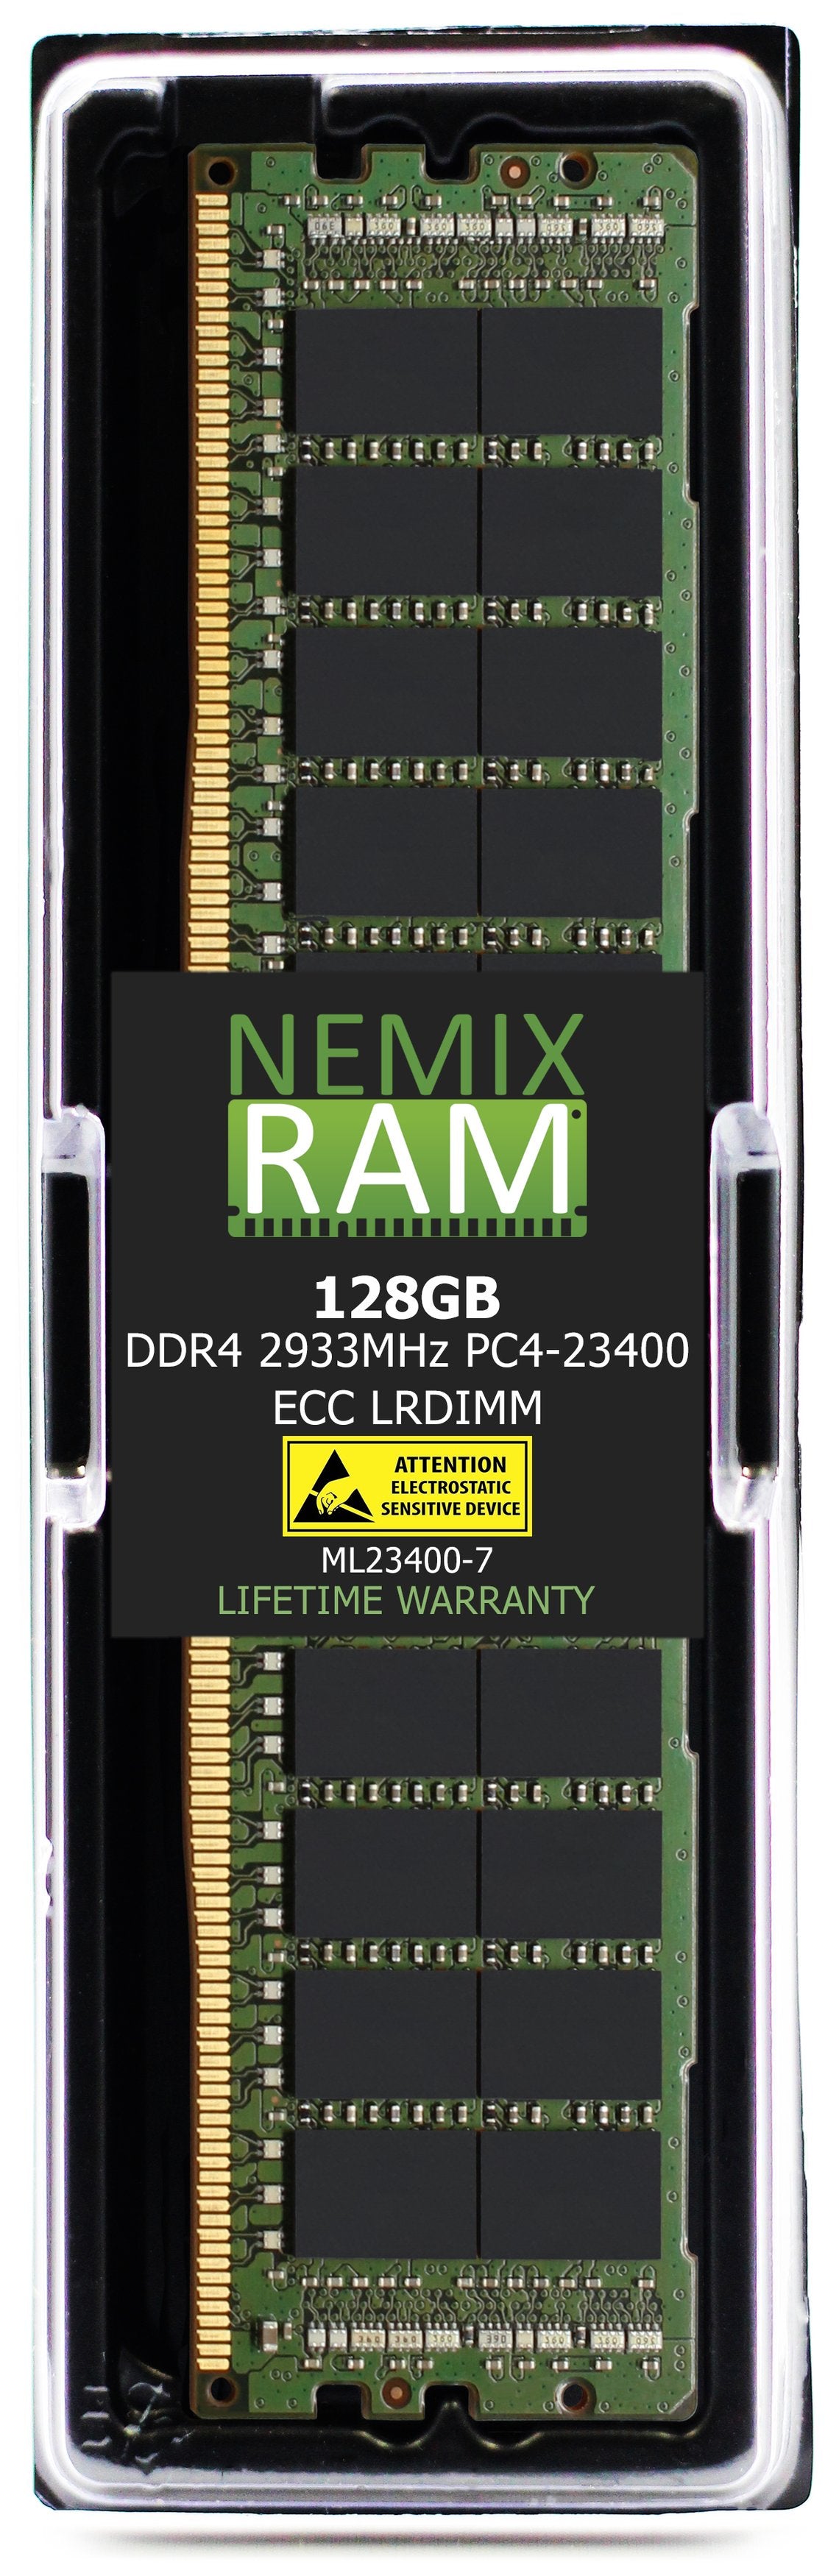 Hynix HMABAGL7C4R4N-WR 128GB DDR4 2933MHZ PC4-23400 LRDIMM Compatible Memory Module